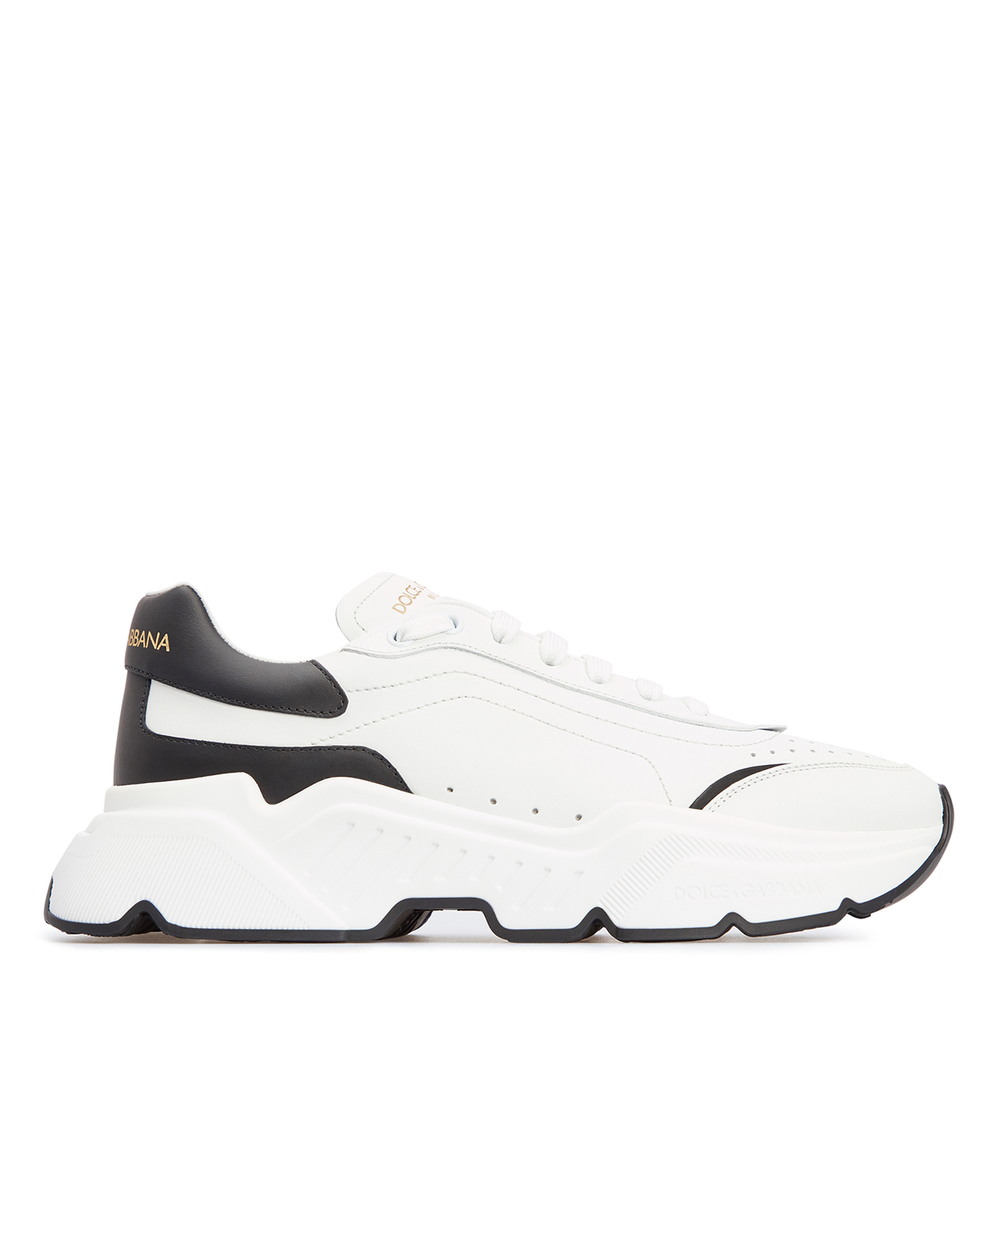 Кожаные кроссовки Daymaster Dolce&Gabbana CS1791-AX589, белый цвет • Купить в интернет-магазине Kameron